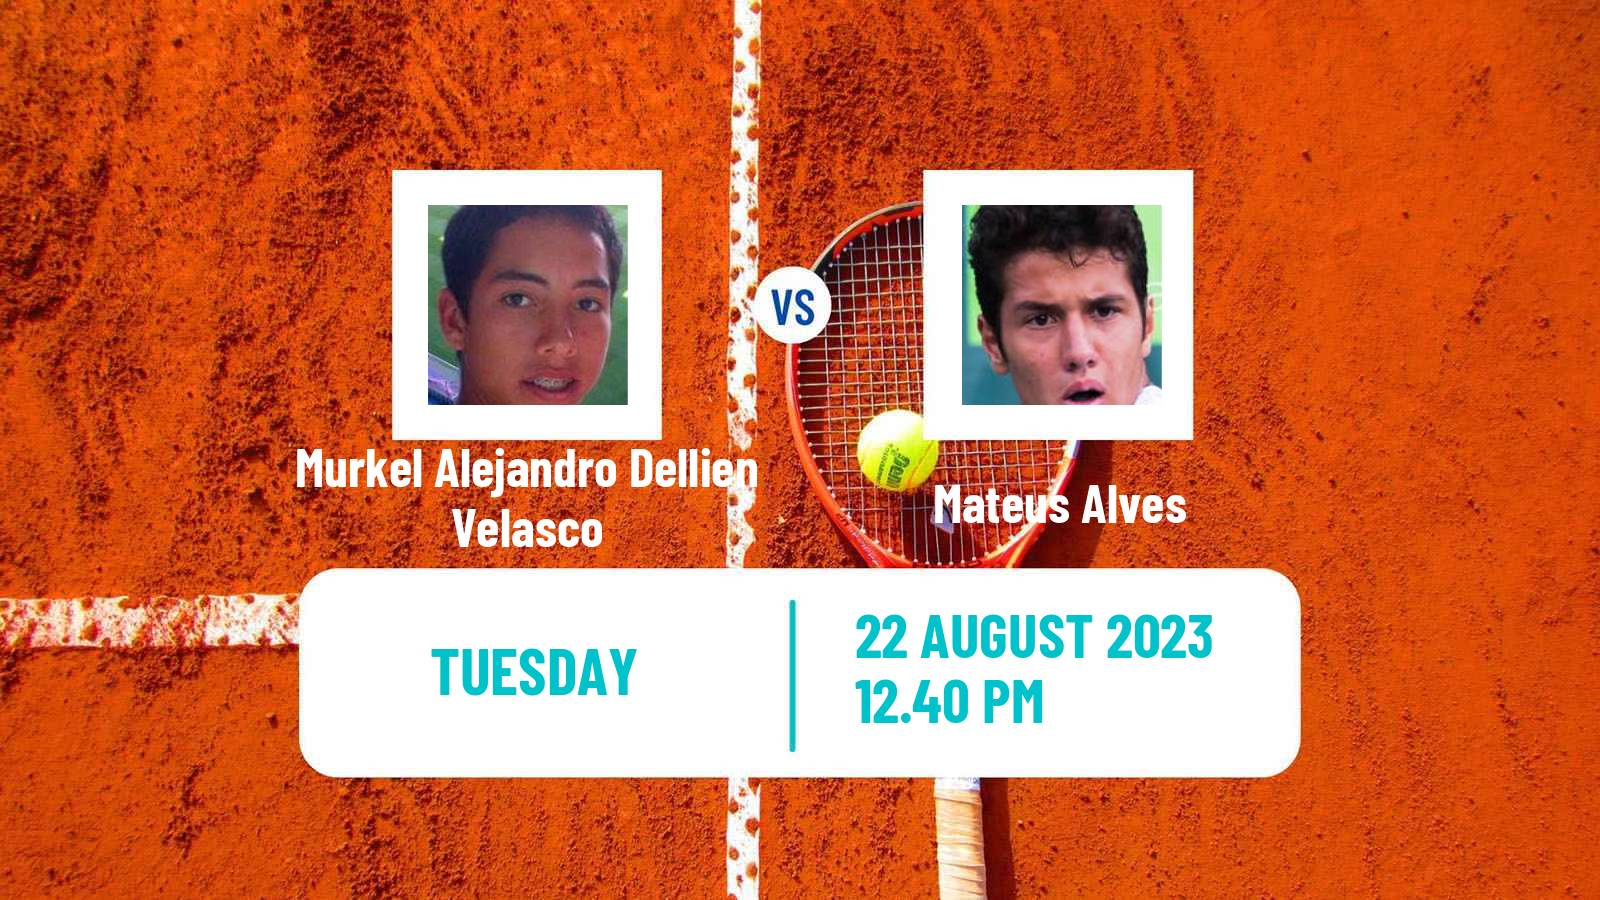 Tennis Lima Challenger Men Murkel Alejandro Dellien Velasco - Mateus Alves